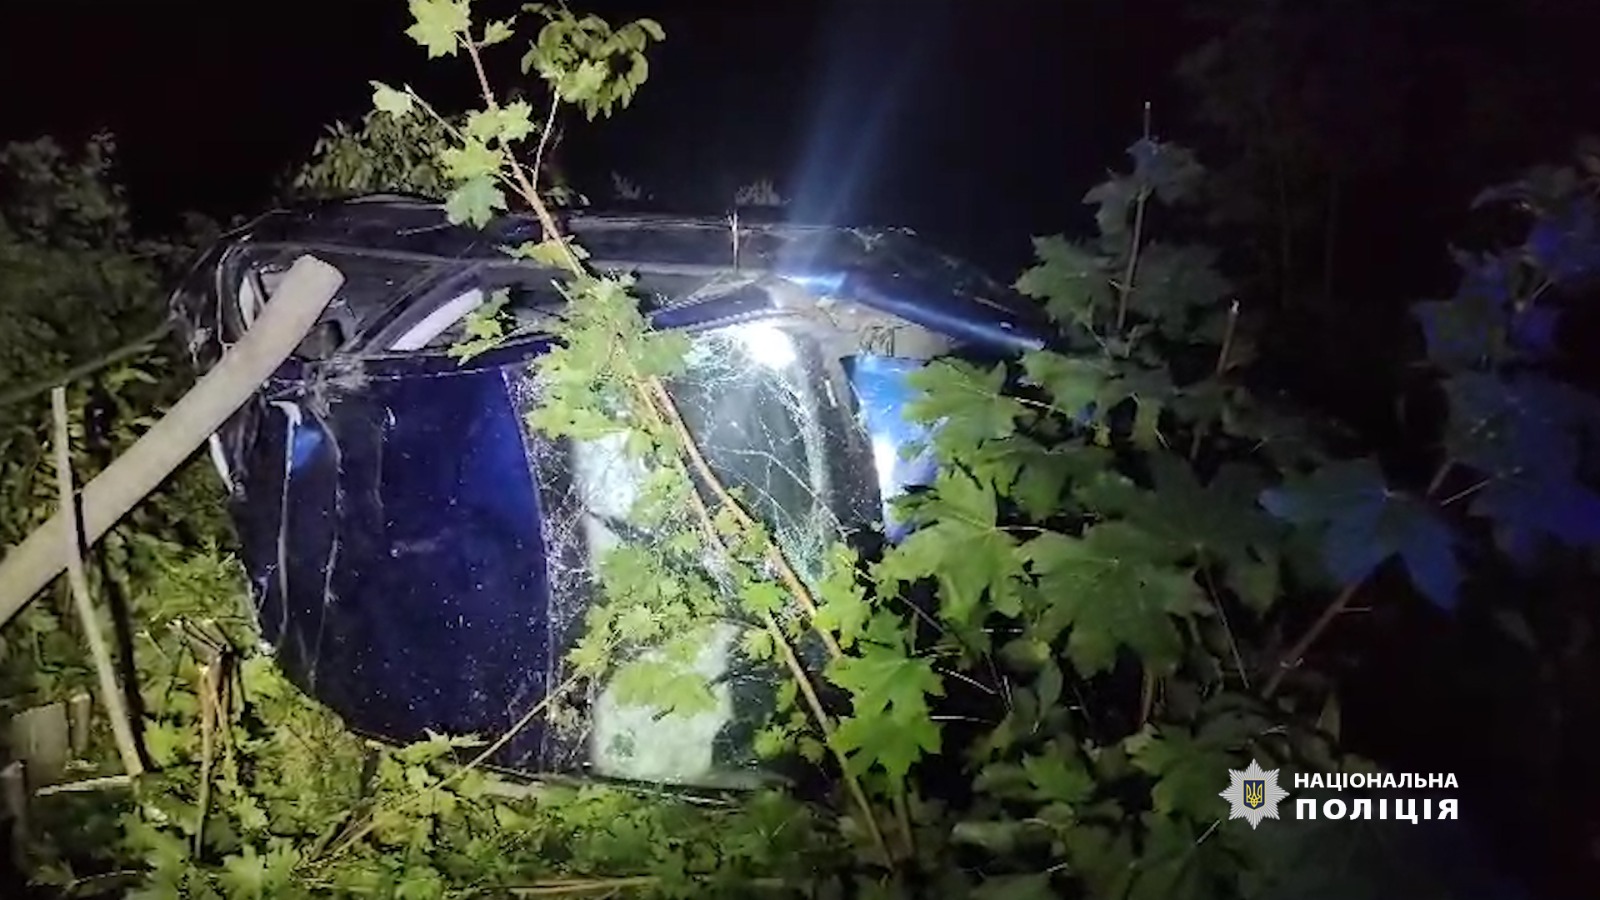 поліцейські розслідують обставини смертельної дтп на автодорозі сполученням подільськ – балта